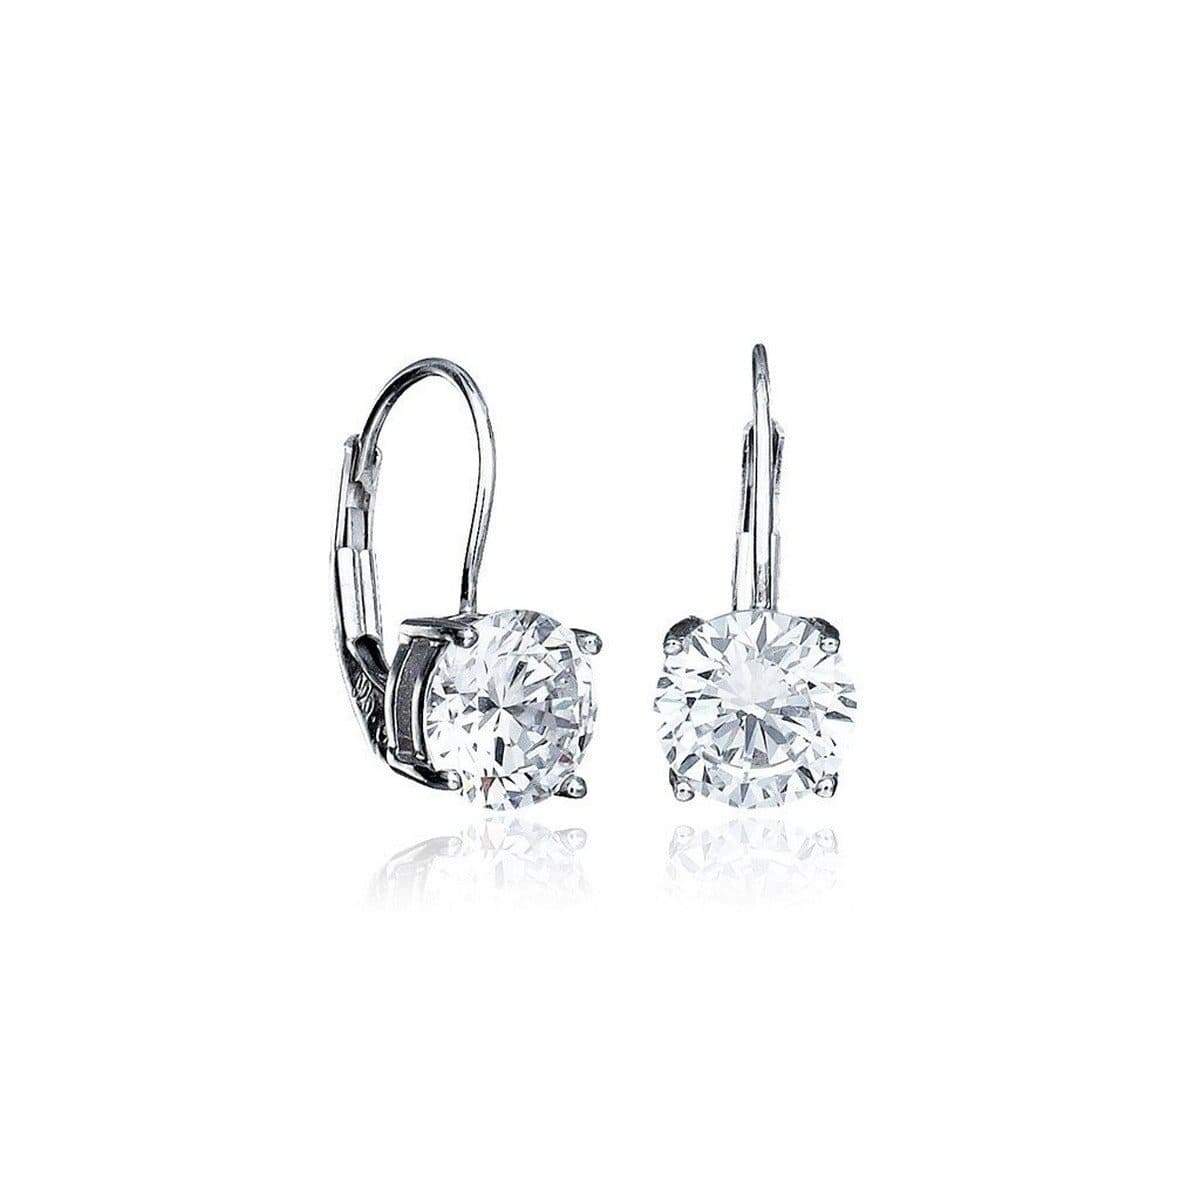 Crislu Jewelry CRISLU Solitaire Brilliant Cut Leverback Earrings Finished in Pure Platinum